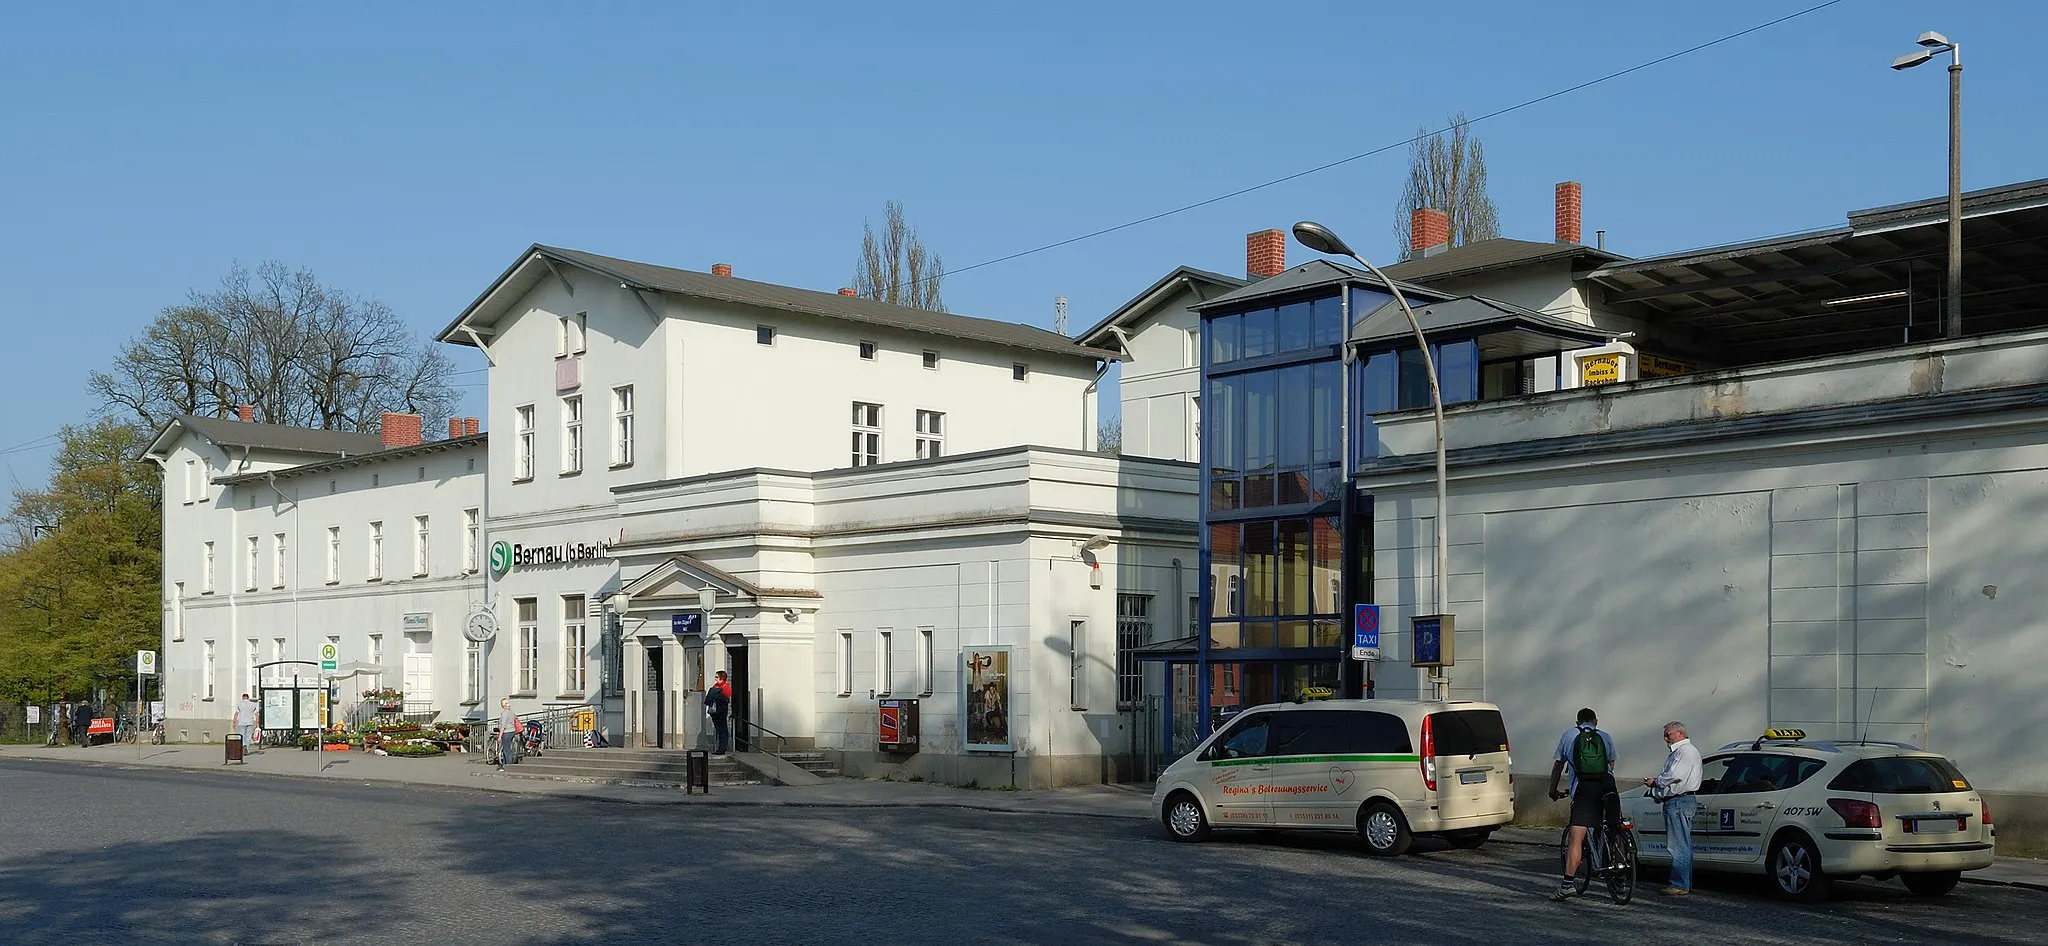 Photo showing: Railway station in Bernau near Berlin.